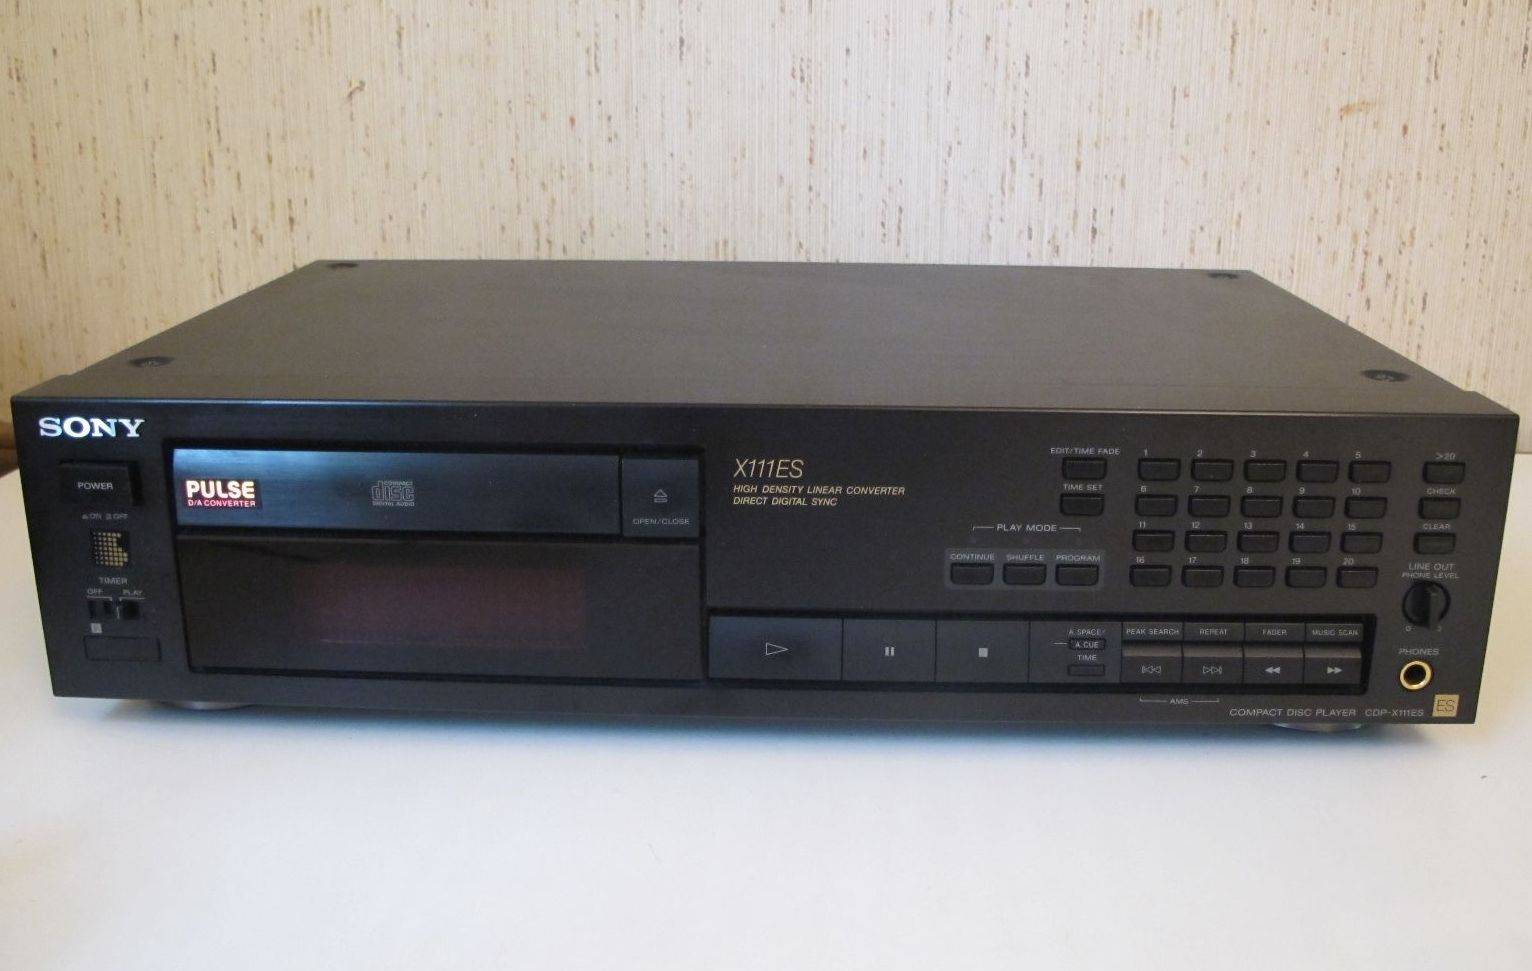 Sony CDP-X111ES